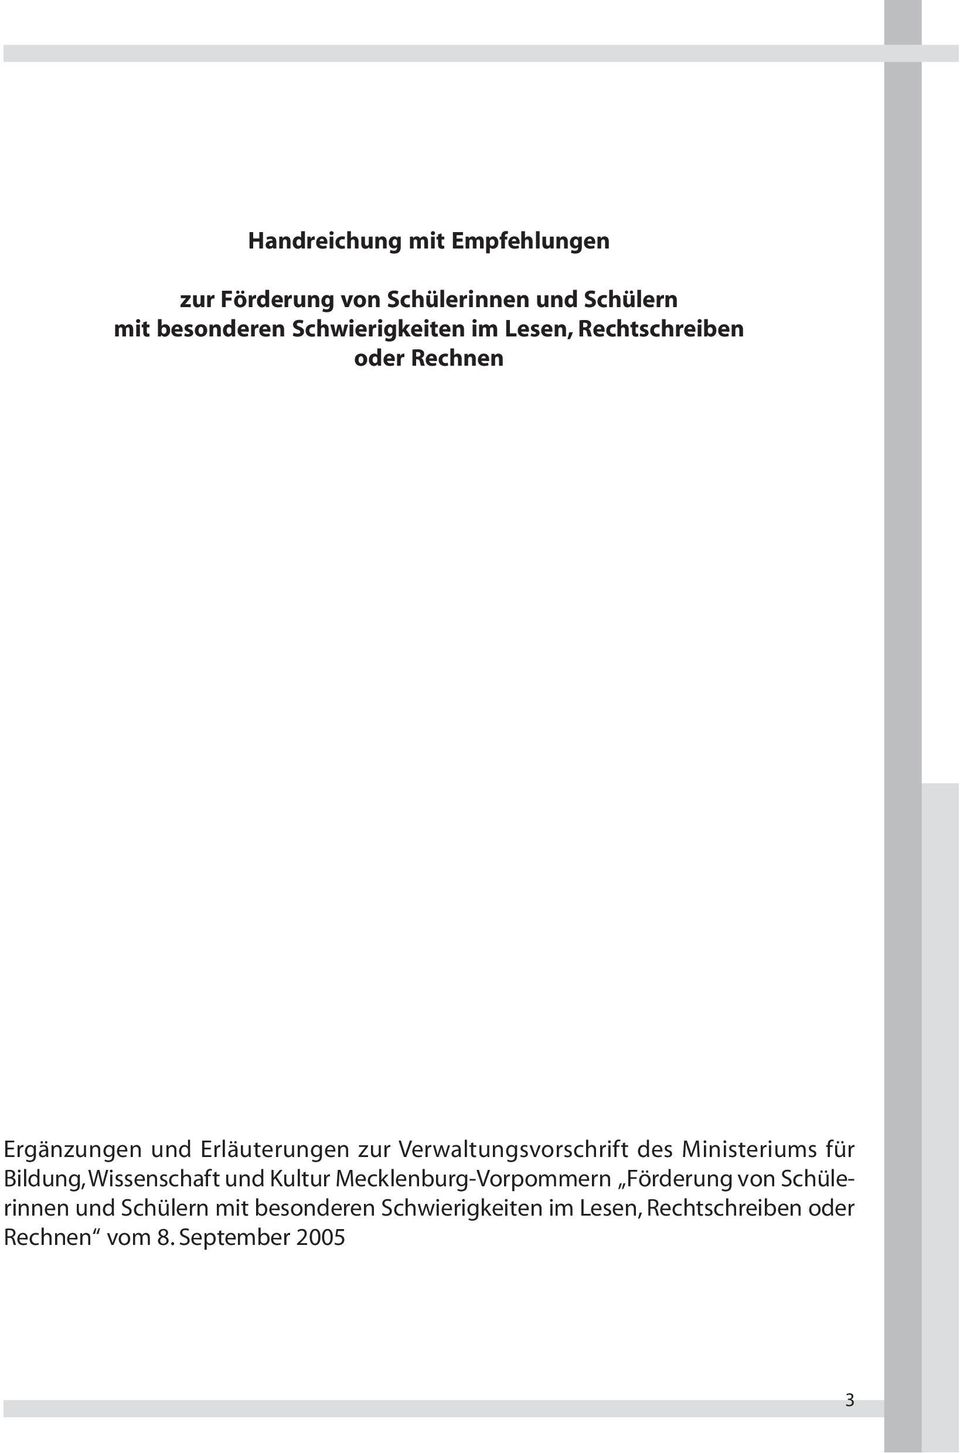 Verwaltungsvorschrift des Ministeriums für Bildung, Wissenschaft und Kultur Mecklenburg-Vorpommern